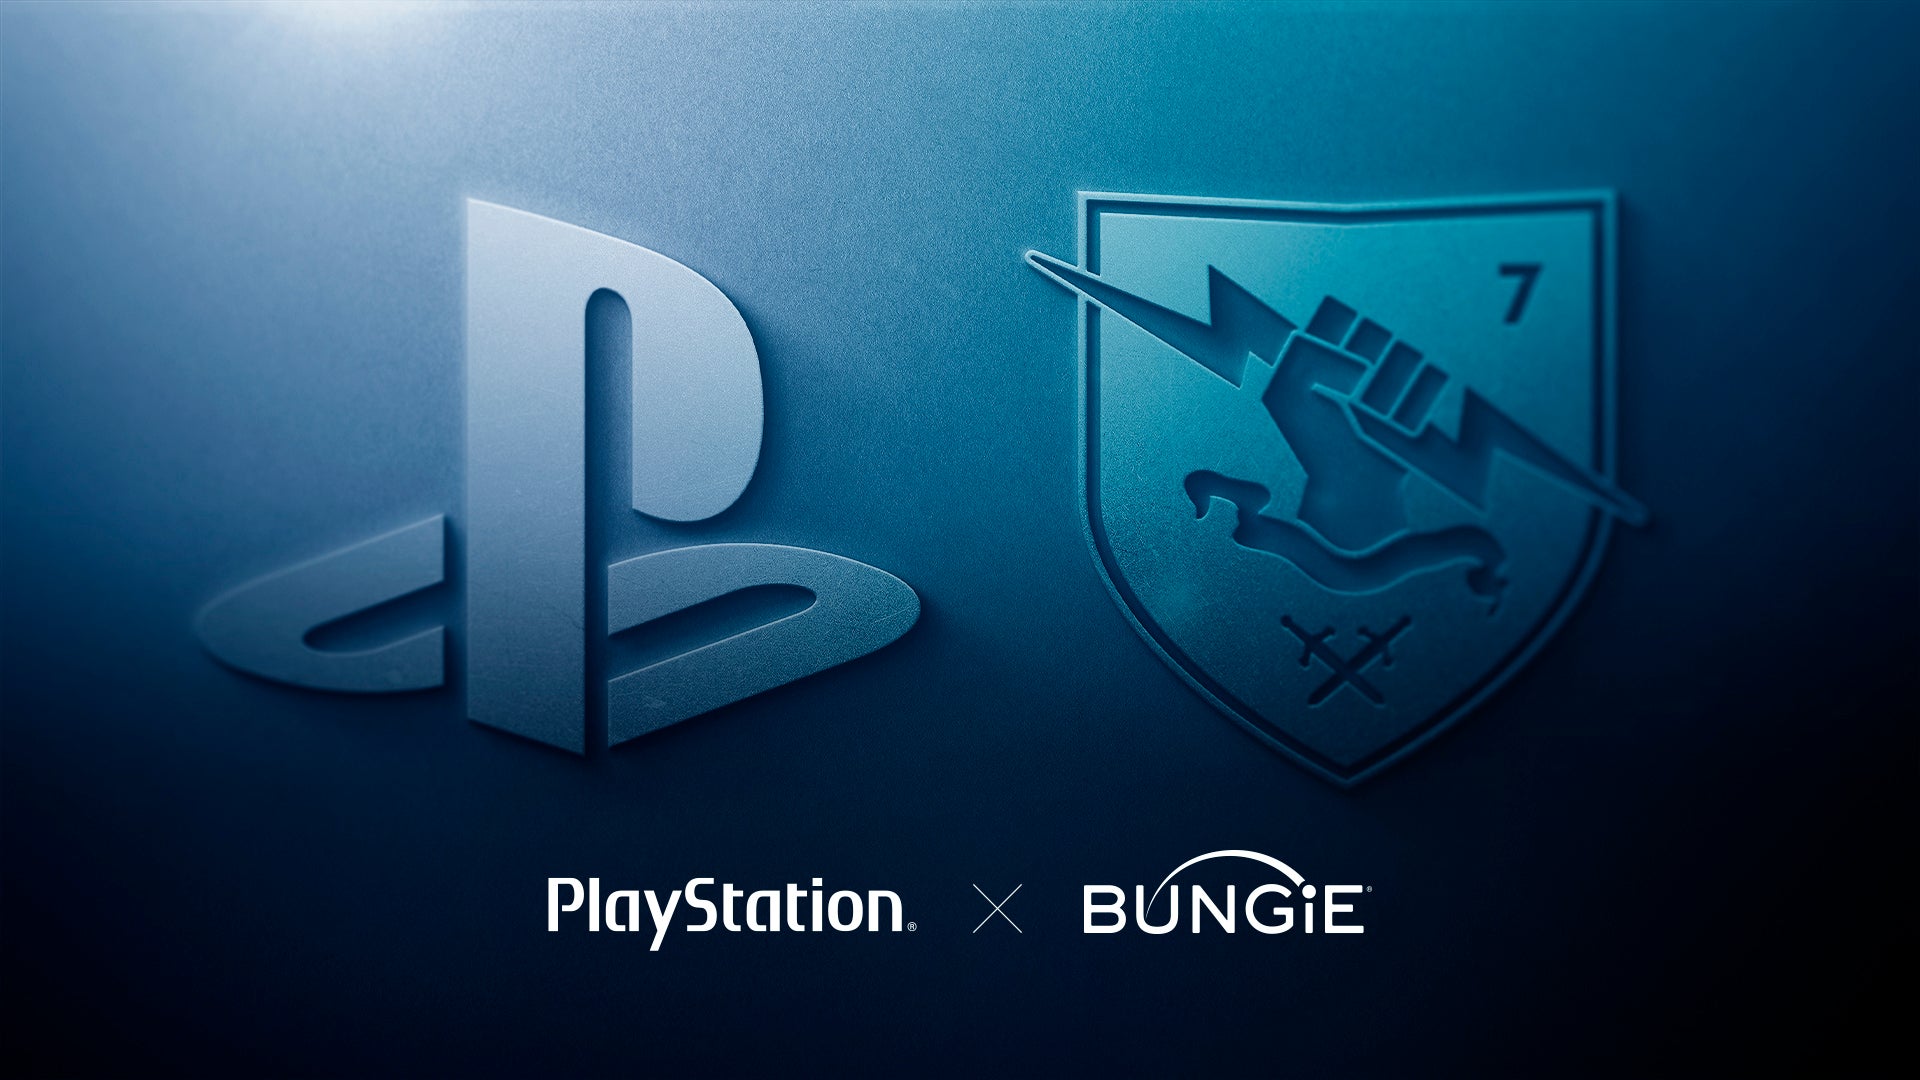 Immagine di PlayStation: Sony ha ufficialmente acquisito Bungie